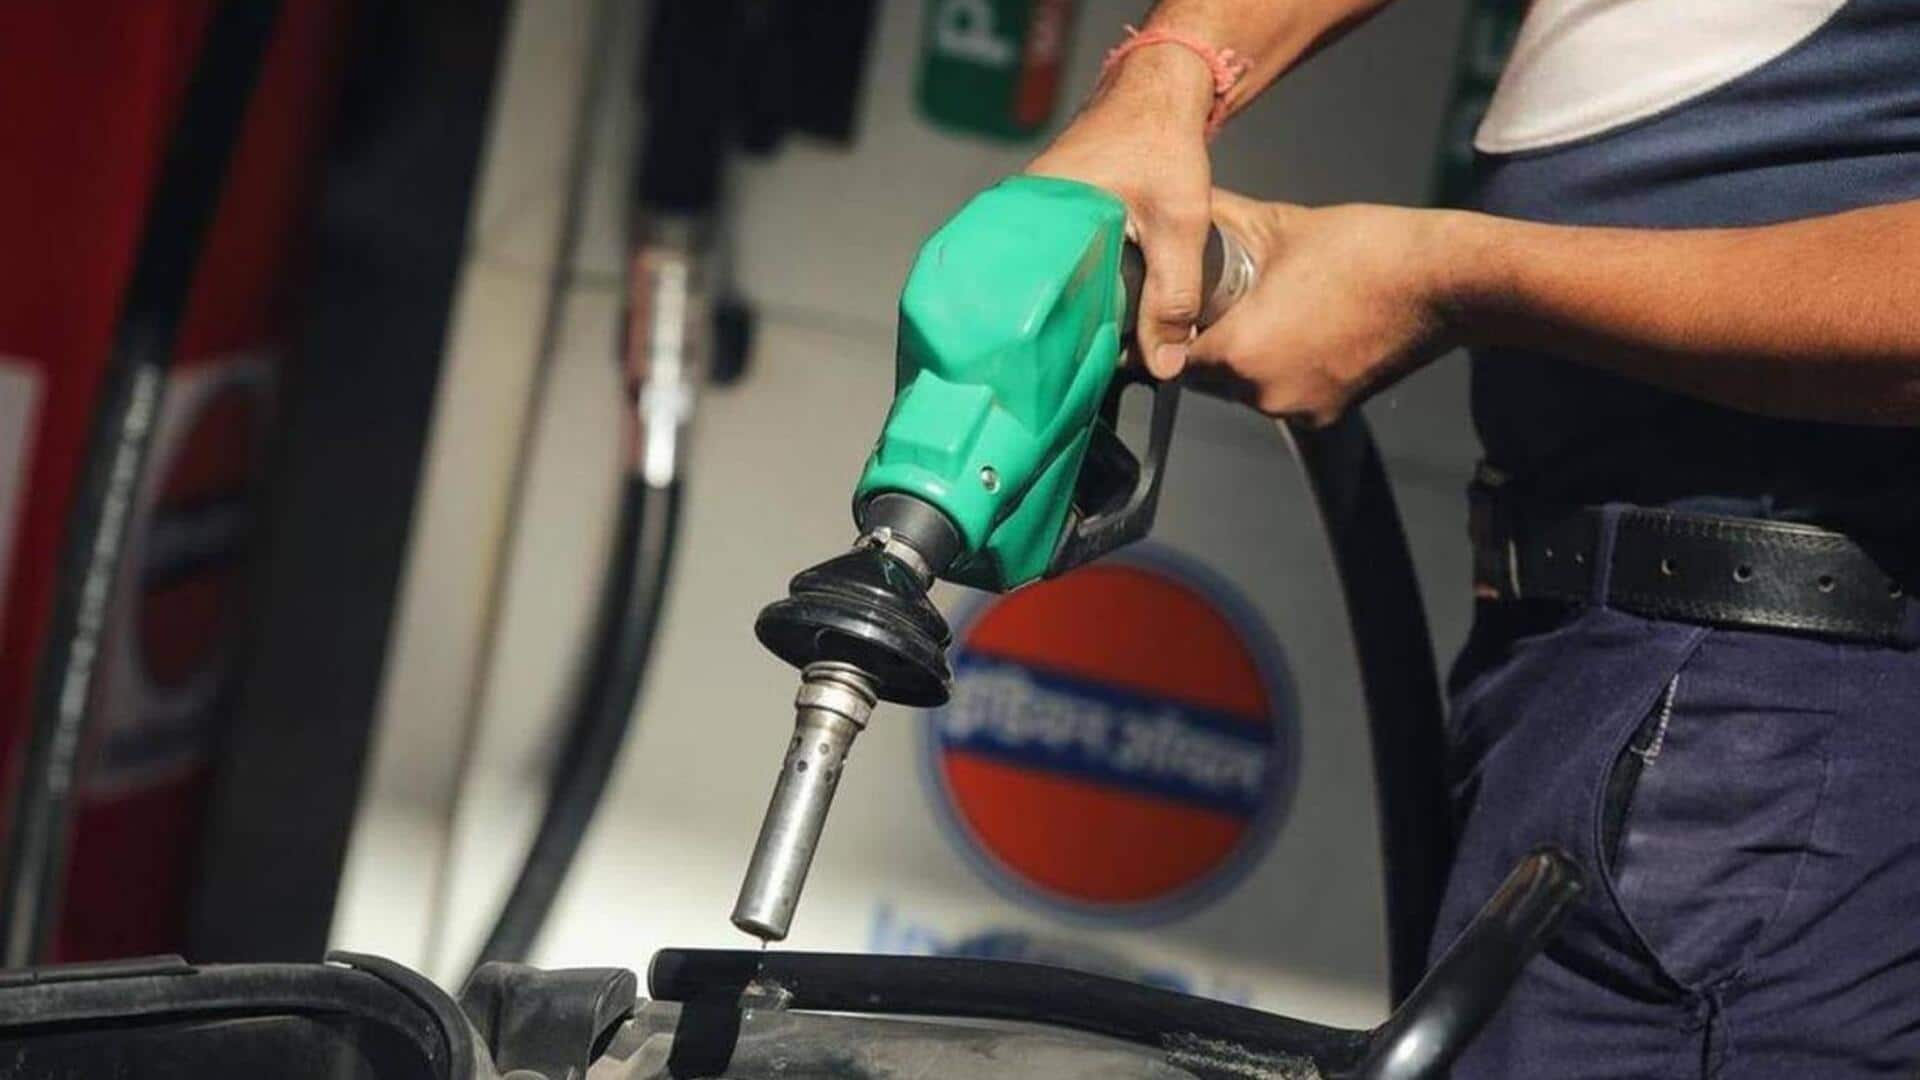 पेट्रोल-डीजल की कीमत: 16 दिसंबर के लिए जारी हुआ ताजा दाम, कितना हुआ बदलाव?